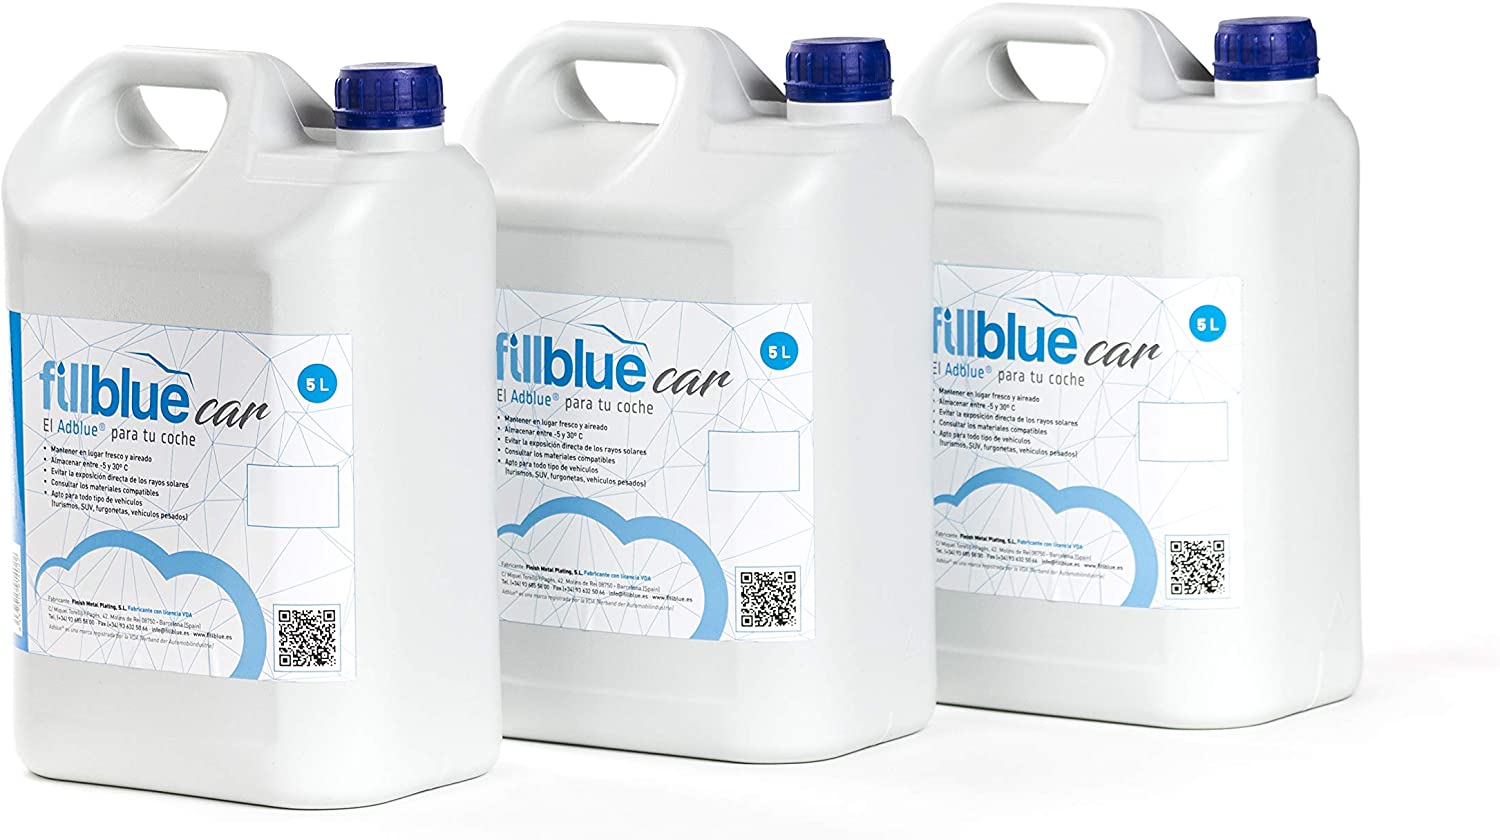 Aditivo para sistema de AdBlue Lancar super aditivo para AdBlue